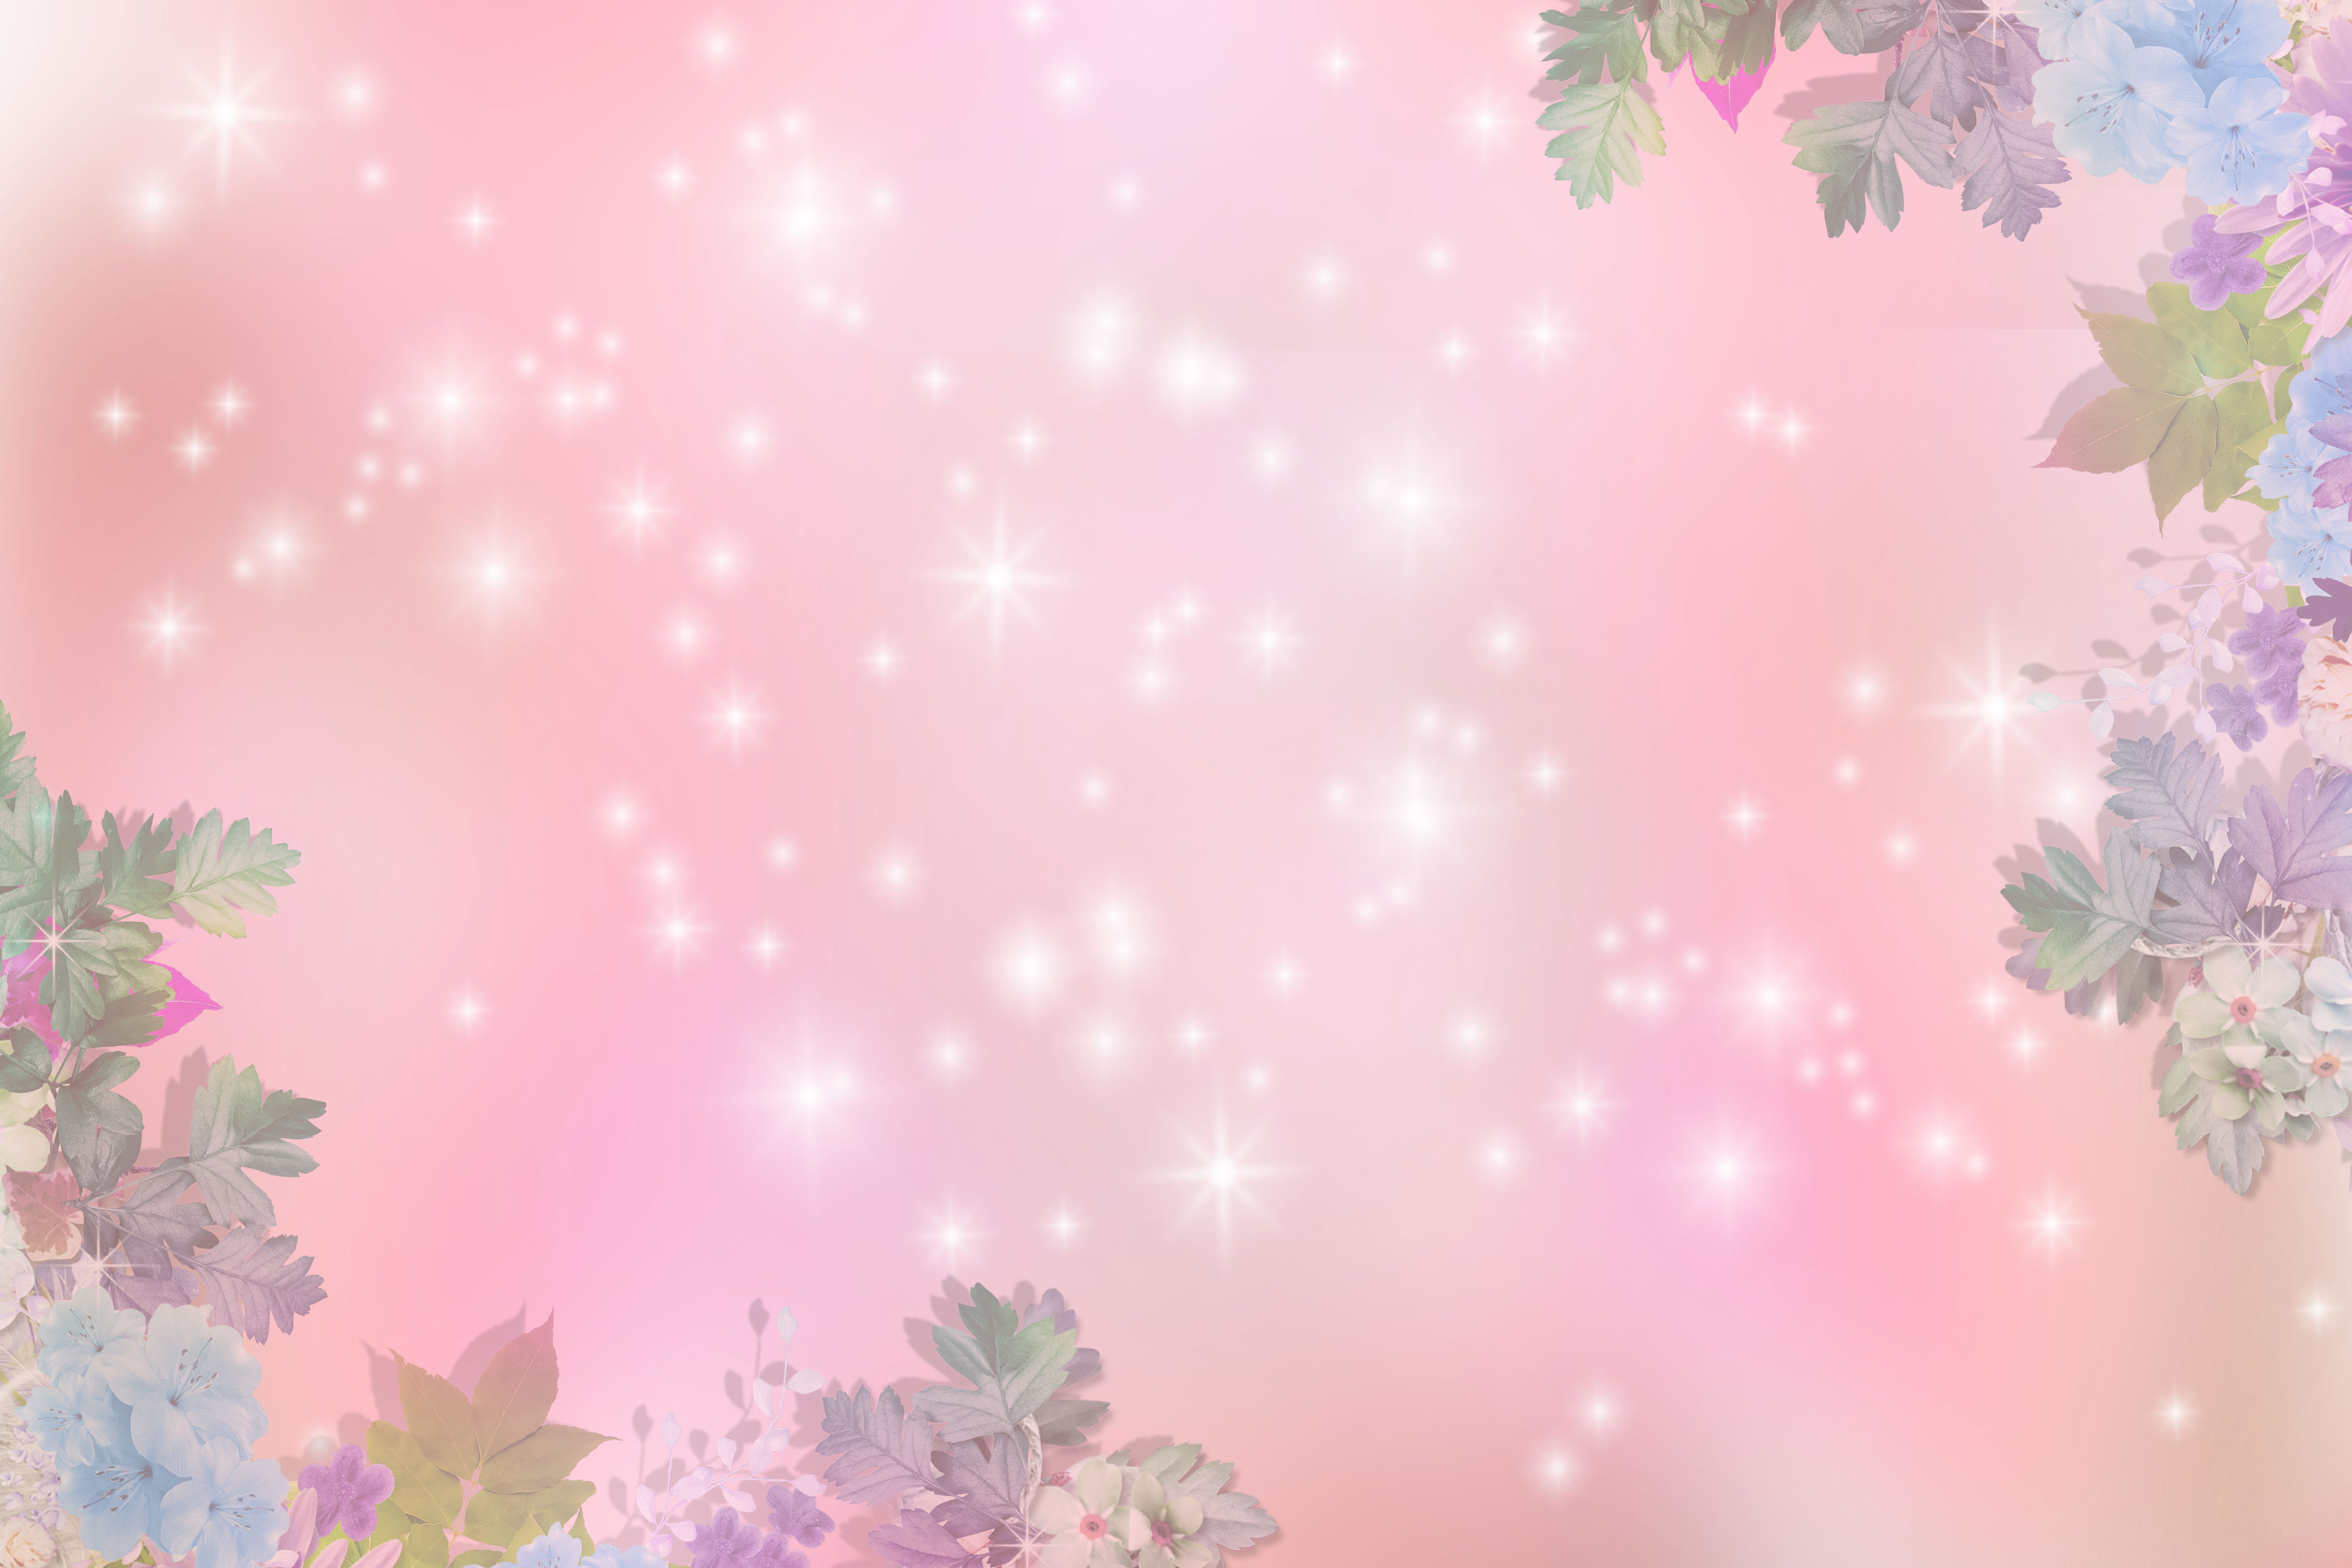 ピンクの花のイラスト フリー素材 壁紙 背景no 717 ピンク 輝く光 淡い